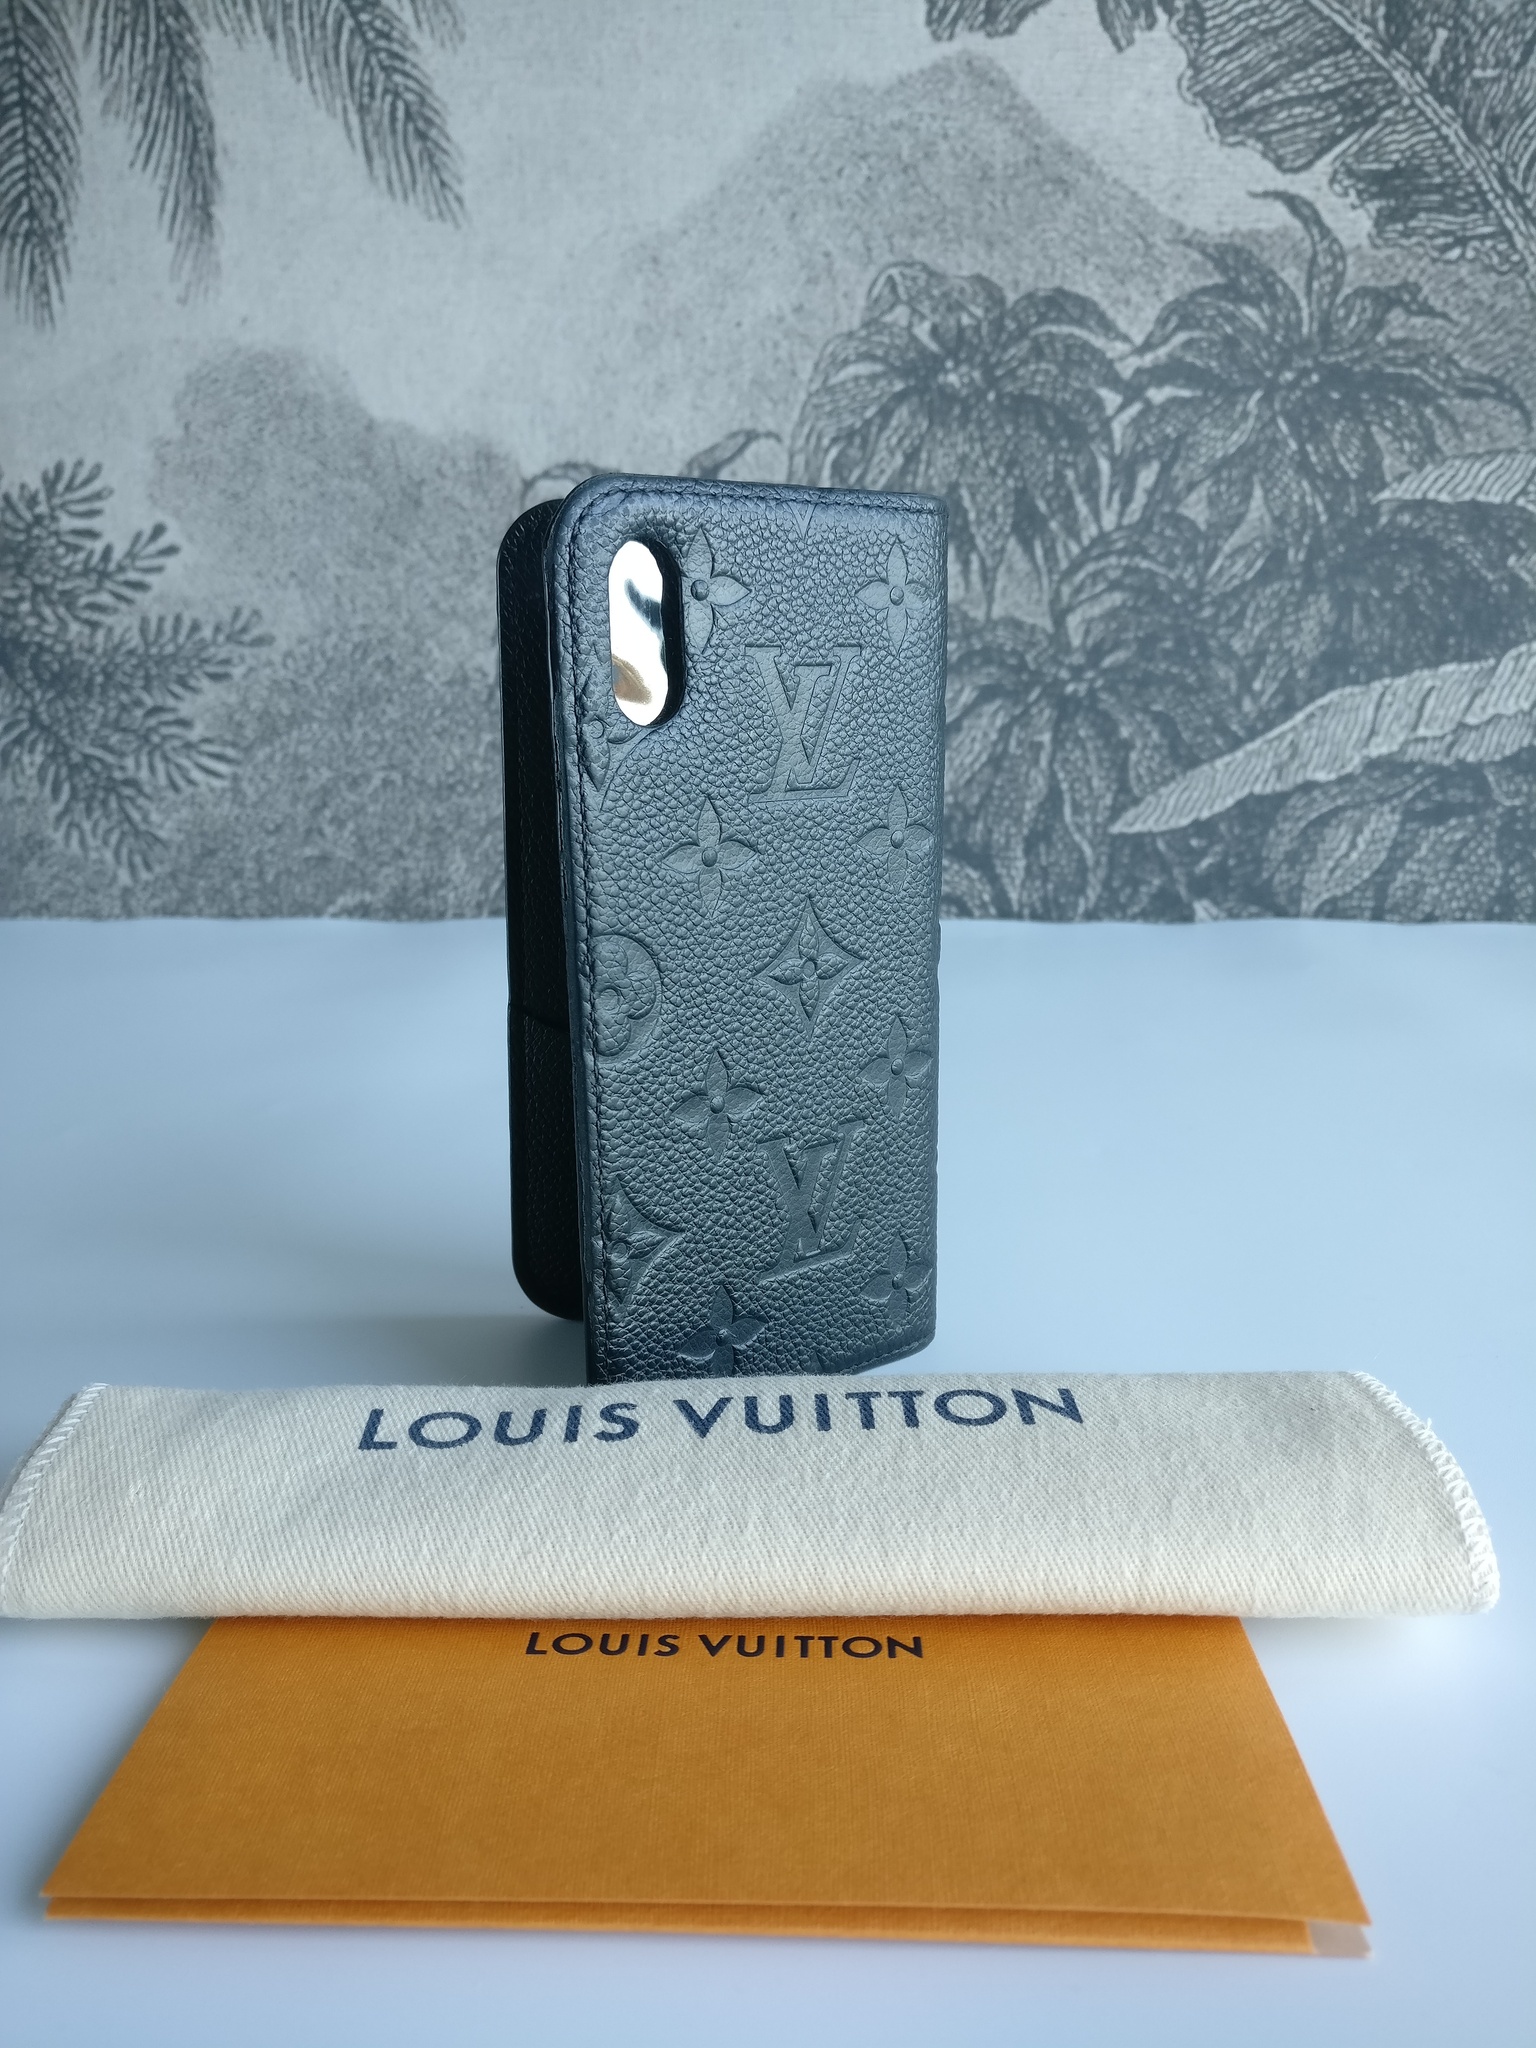 Louis Vuitton IPhone case